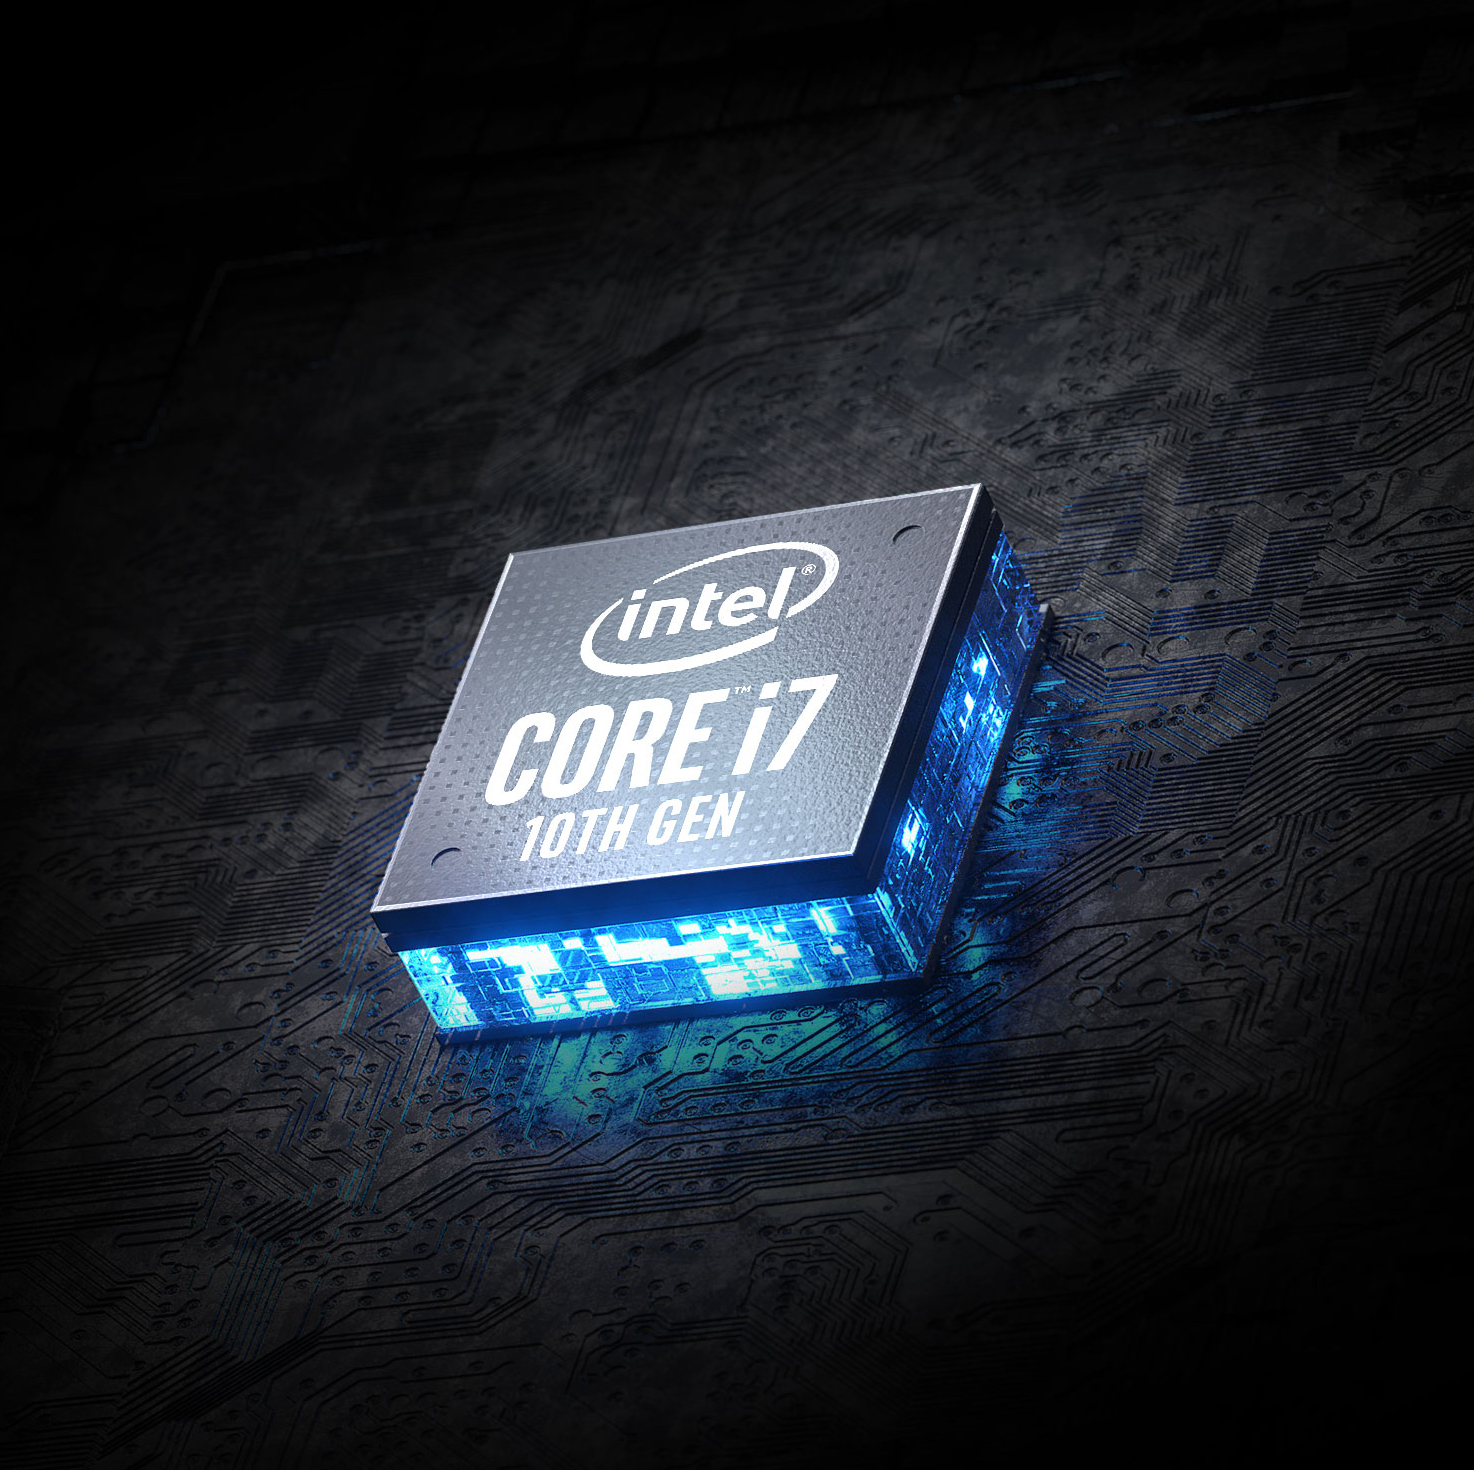 Intel Core i7 10th Gen in the center.